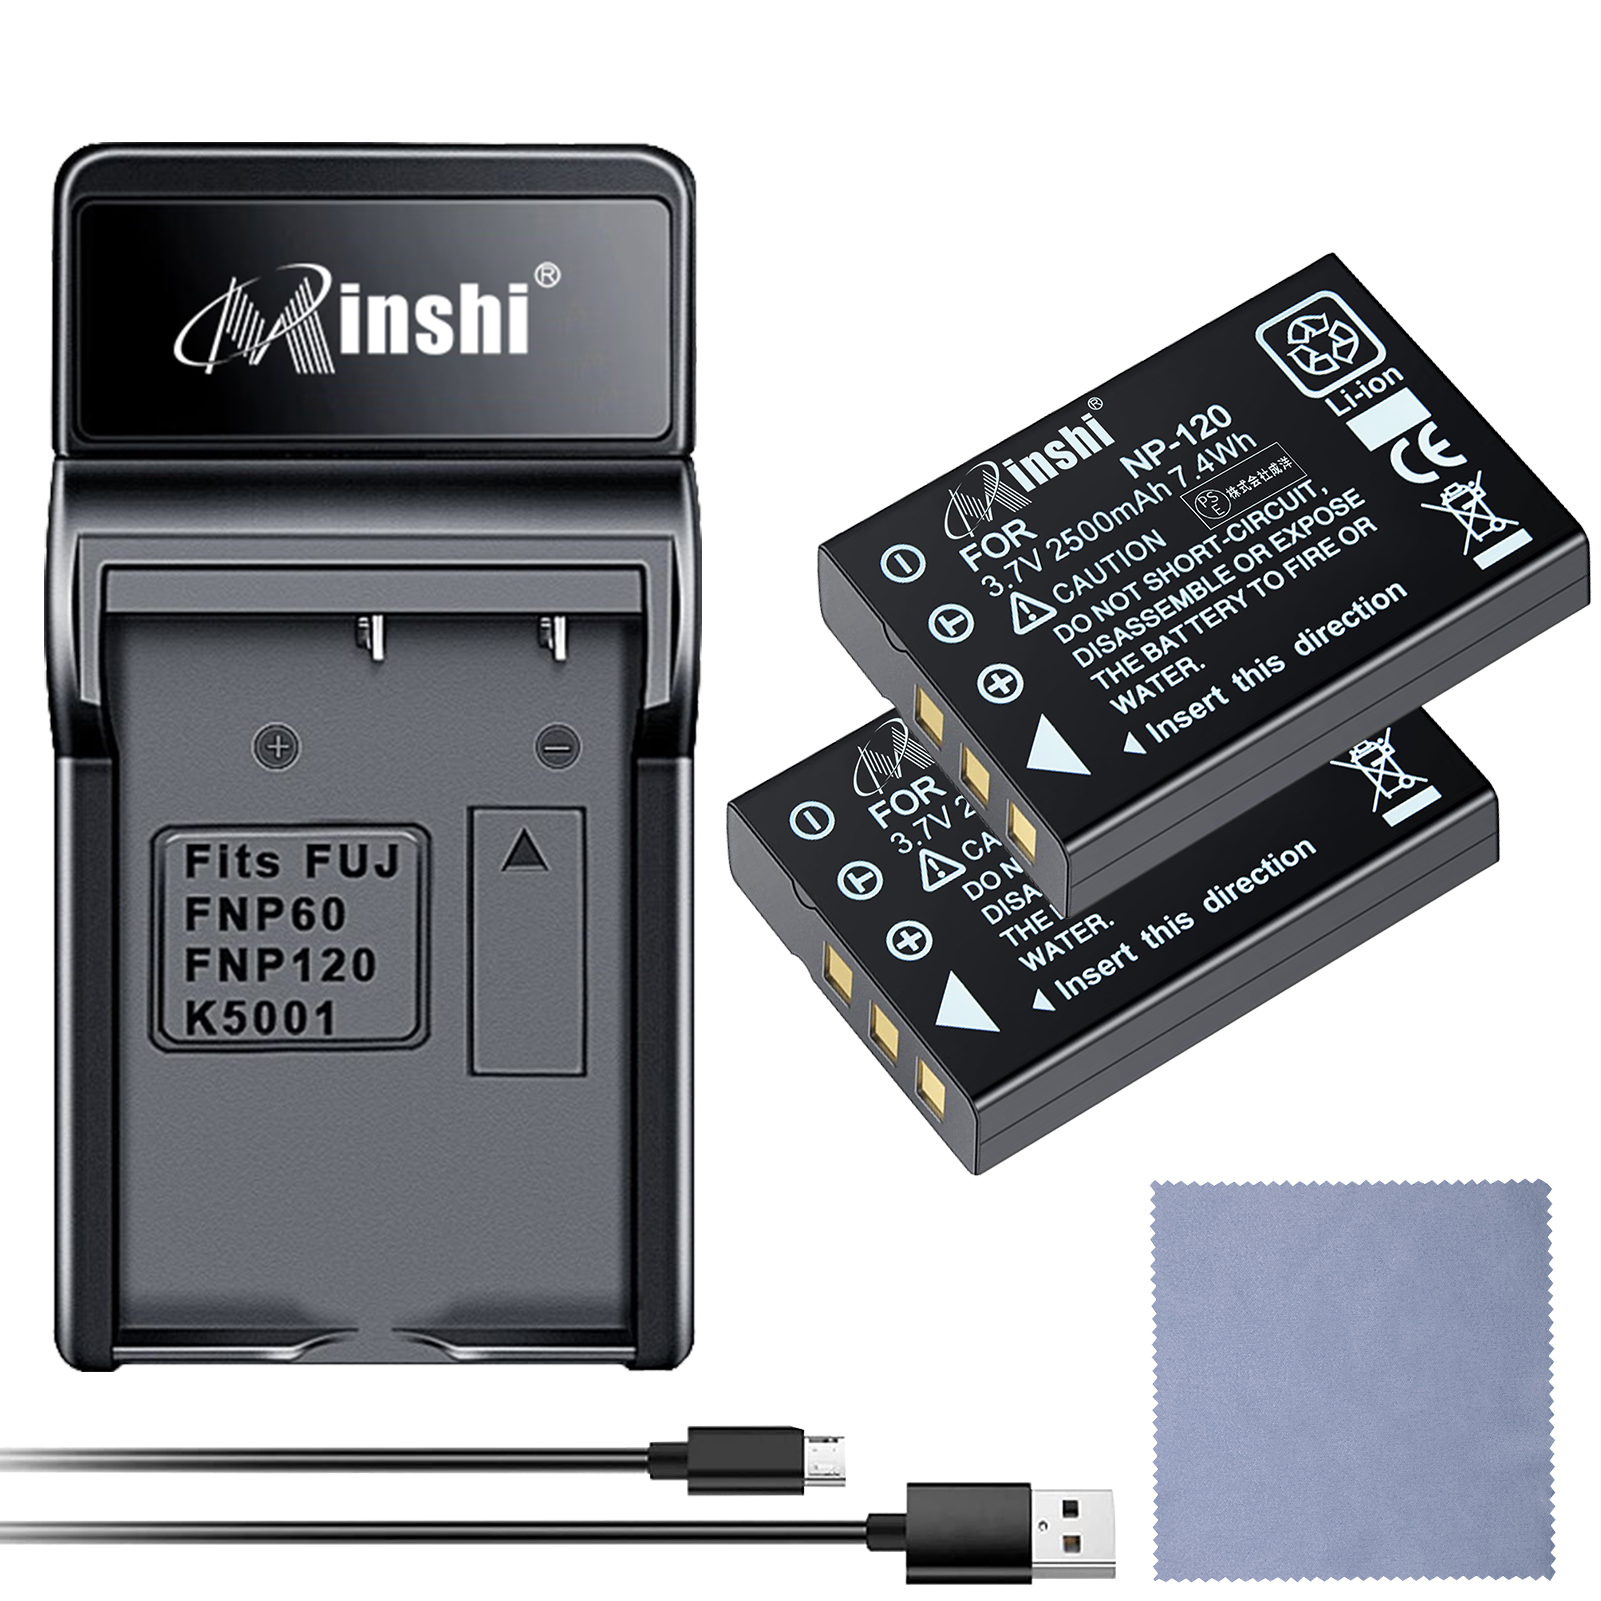 【セット】minshi FUJIFILM Caplio 300G DB-43 【2500mAh 3.7V】PSE認定済 高品質交換用バッテリー【2個】